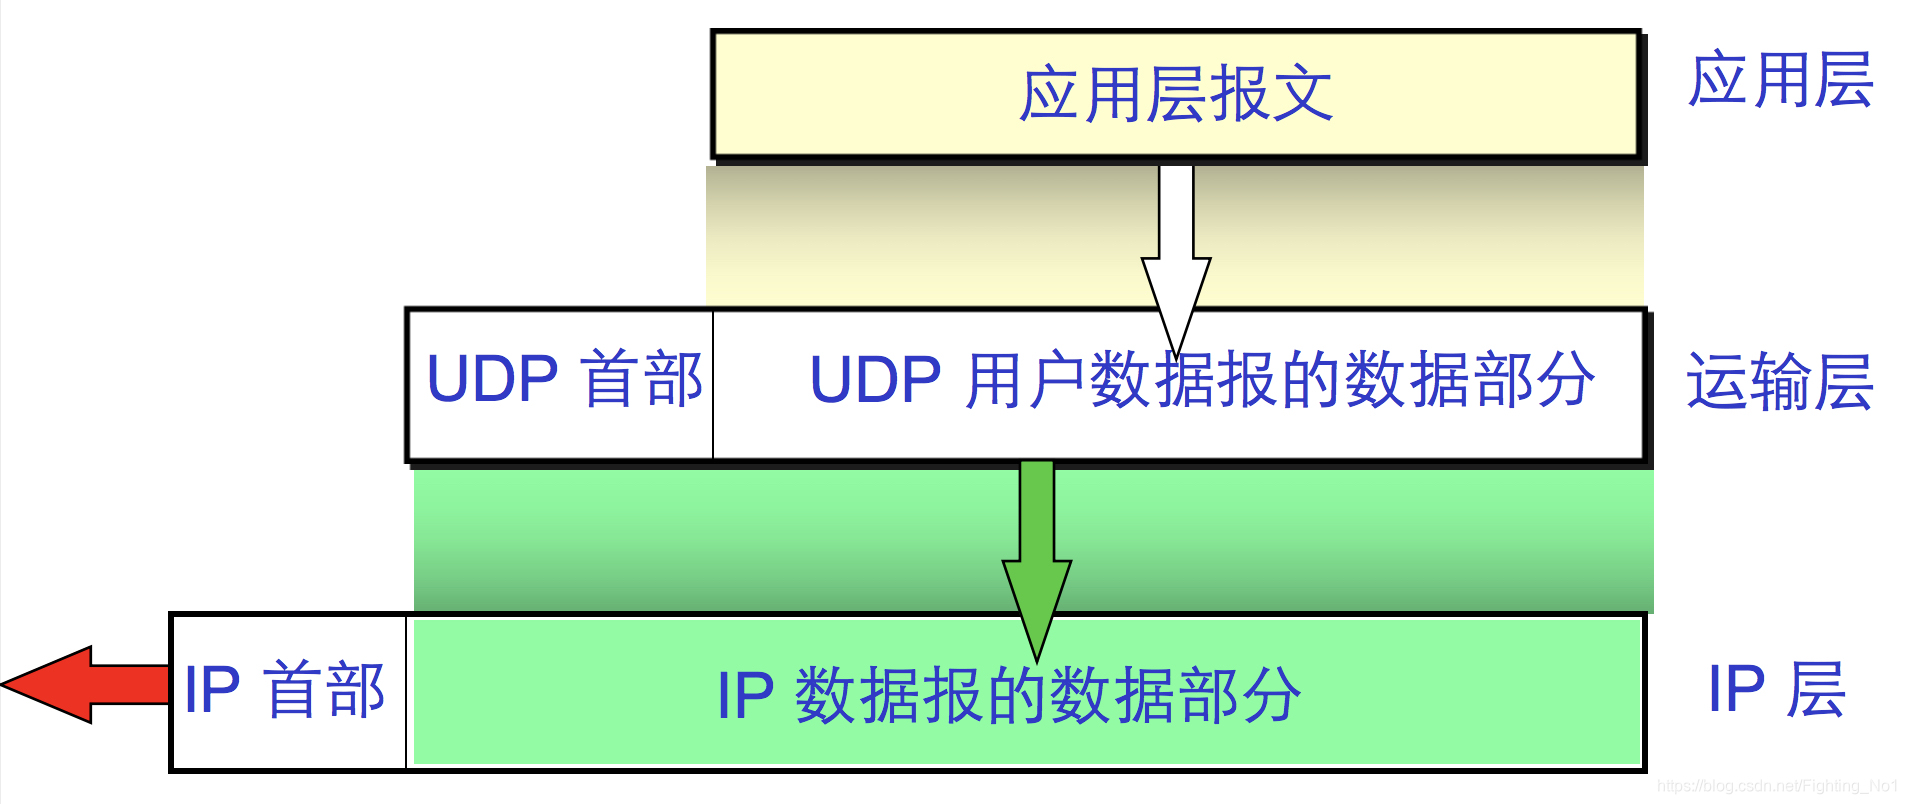 面向报文的UDP